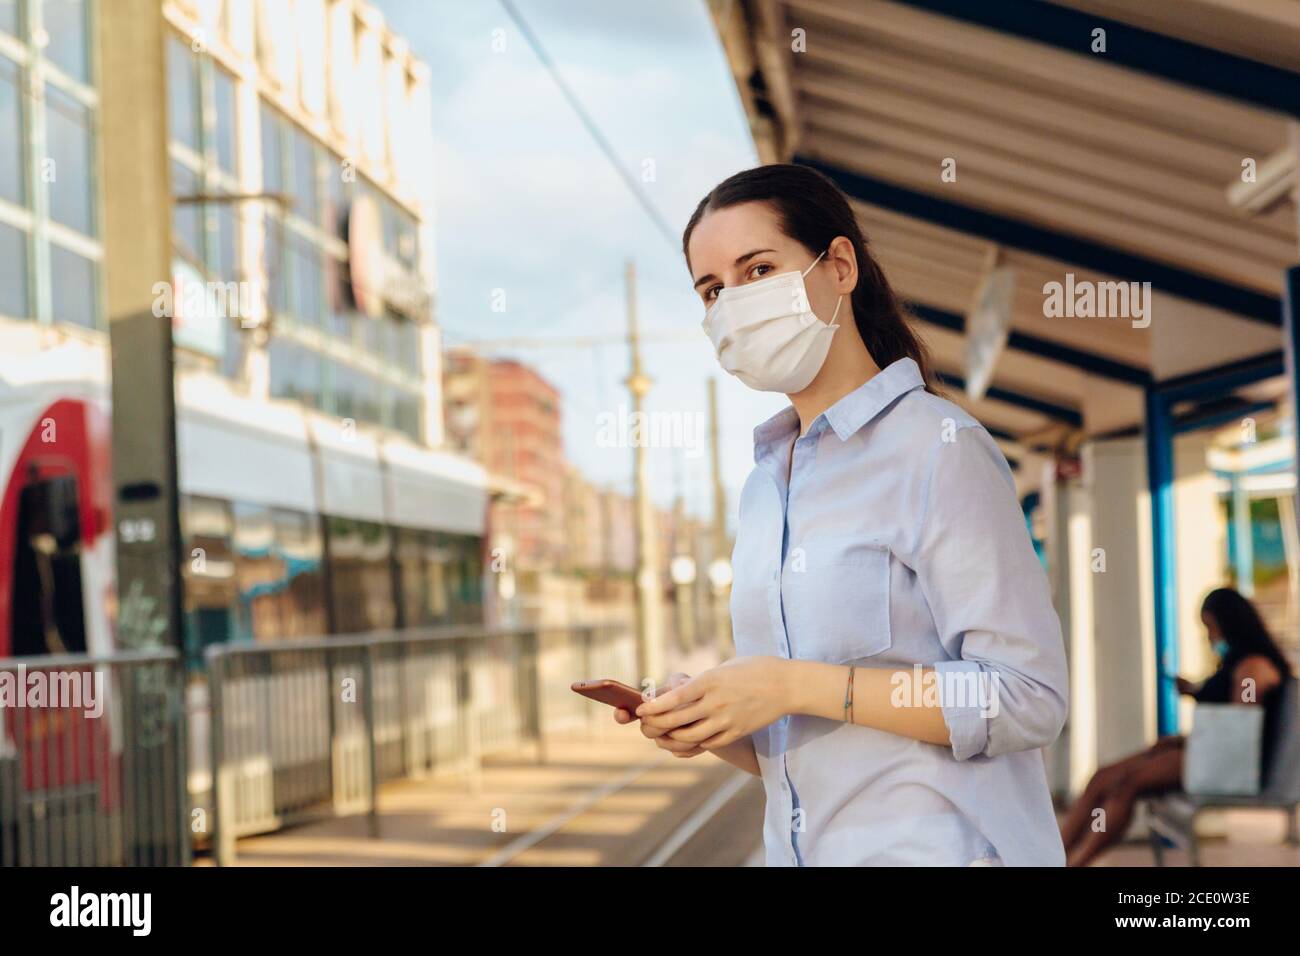 Stock Foto von einer Frau mit Gesichtsmaske, hält ein Telefon und wartet auf die Straßenbahn, um am Bahnhof ankommen. Neues normales Konzept Stockfoto